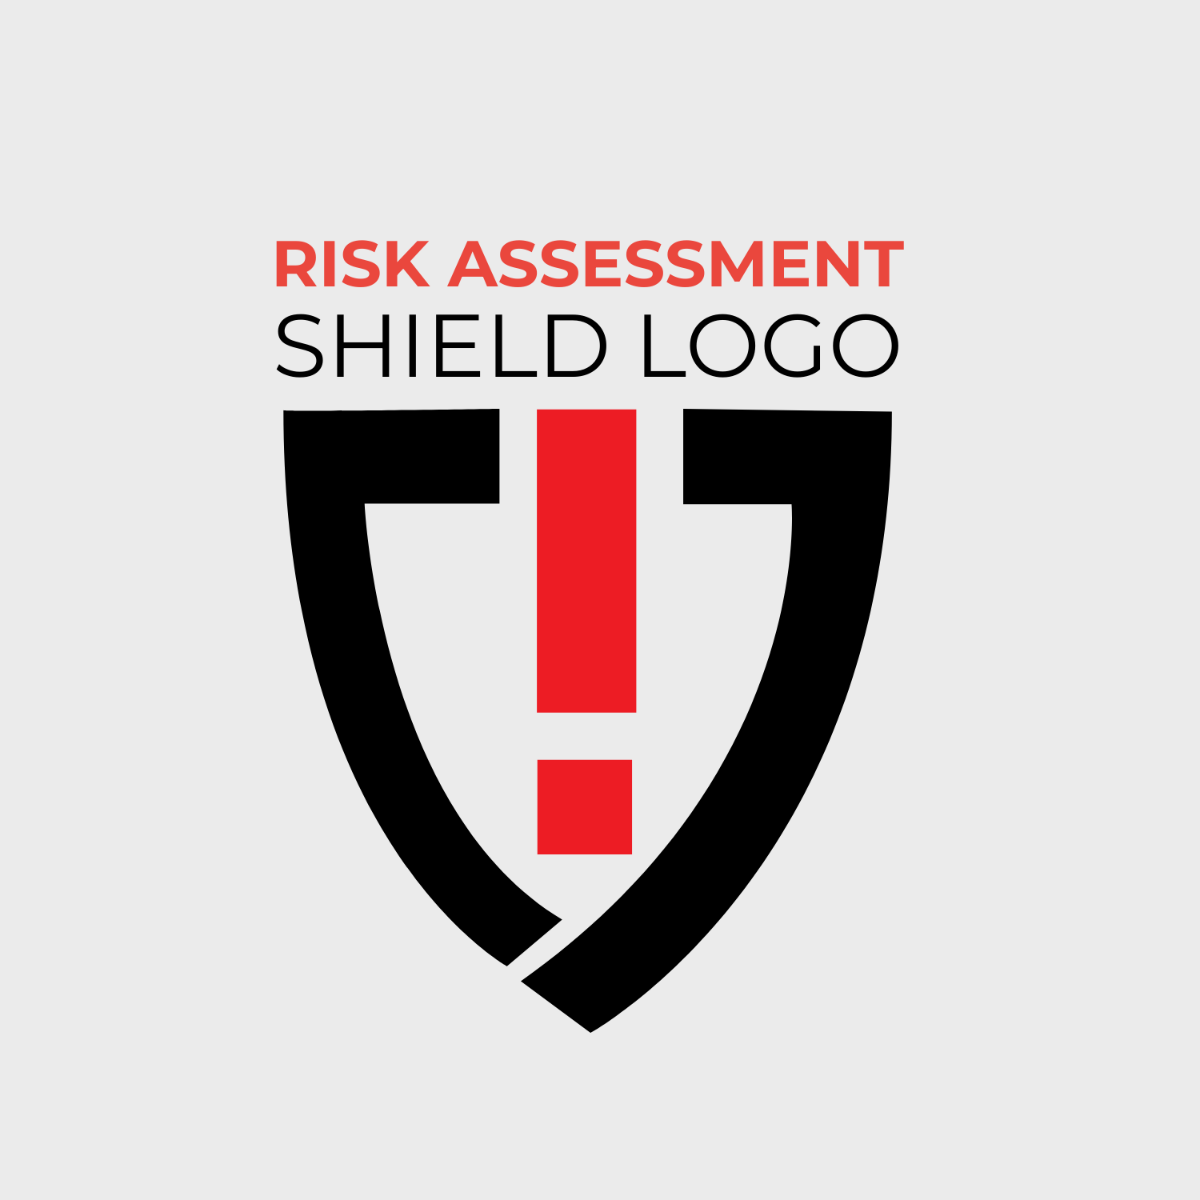 Risk Assessment Shield Logo Template